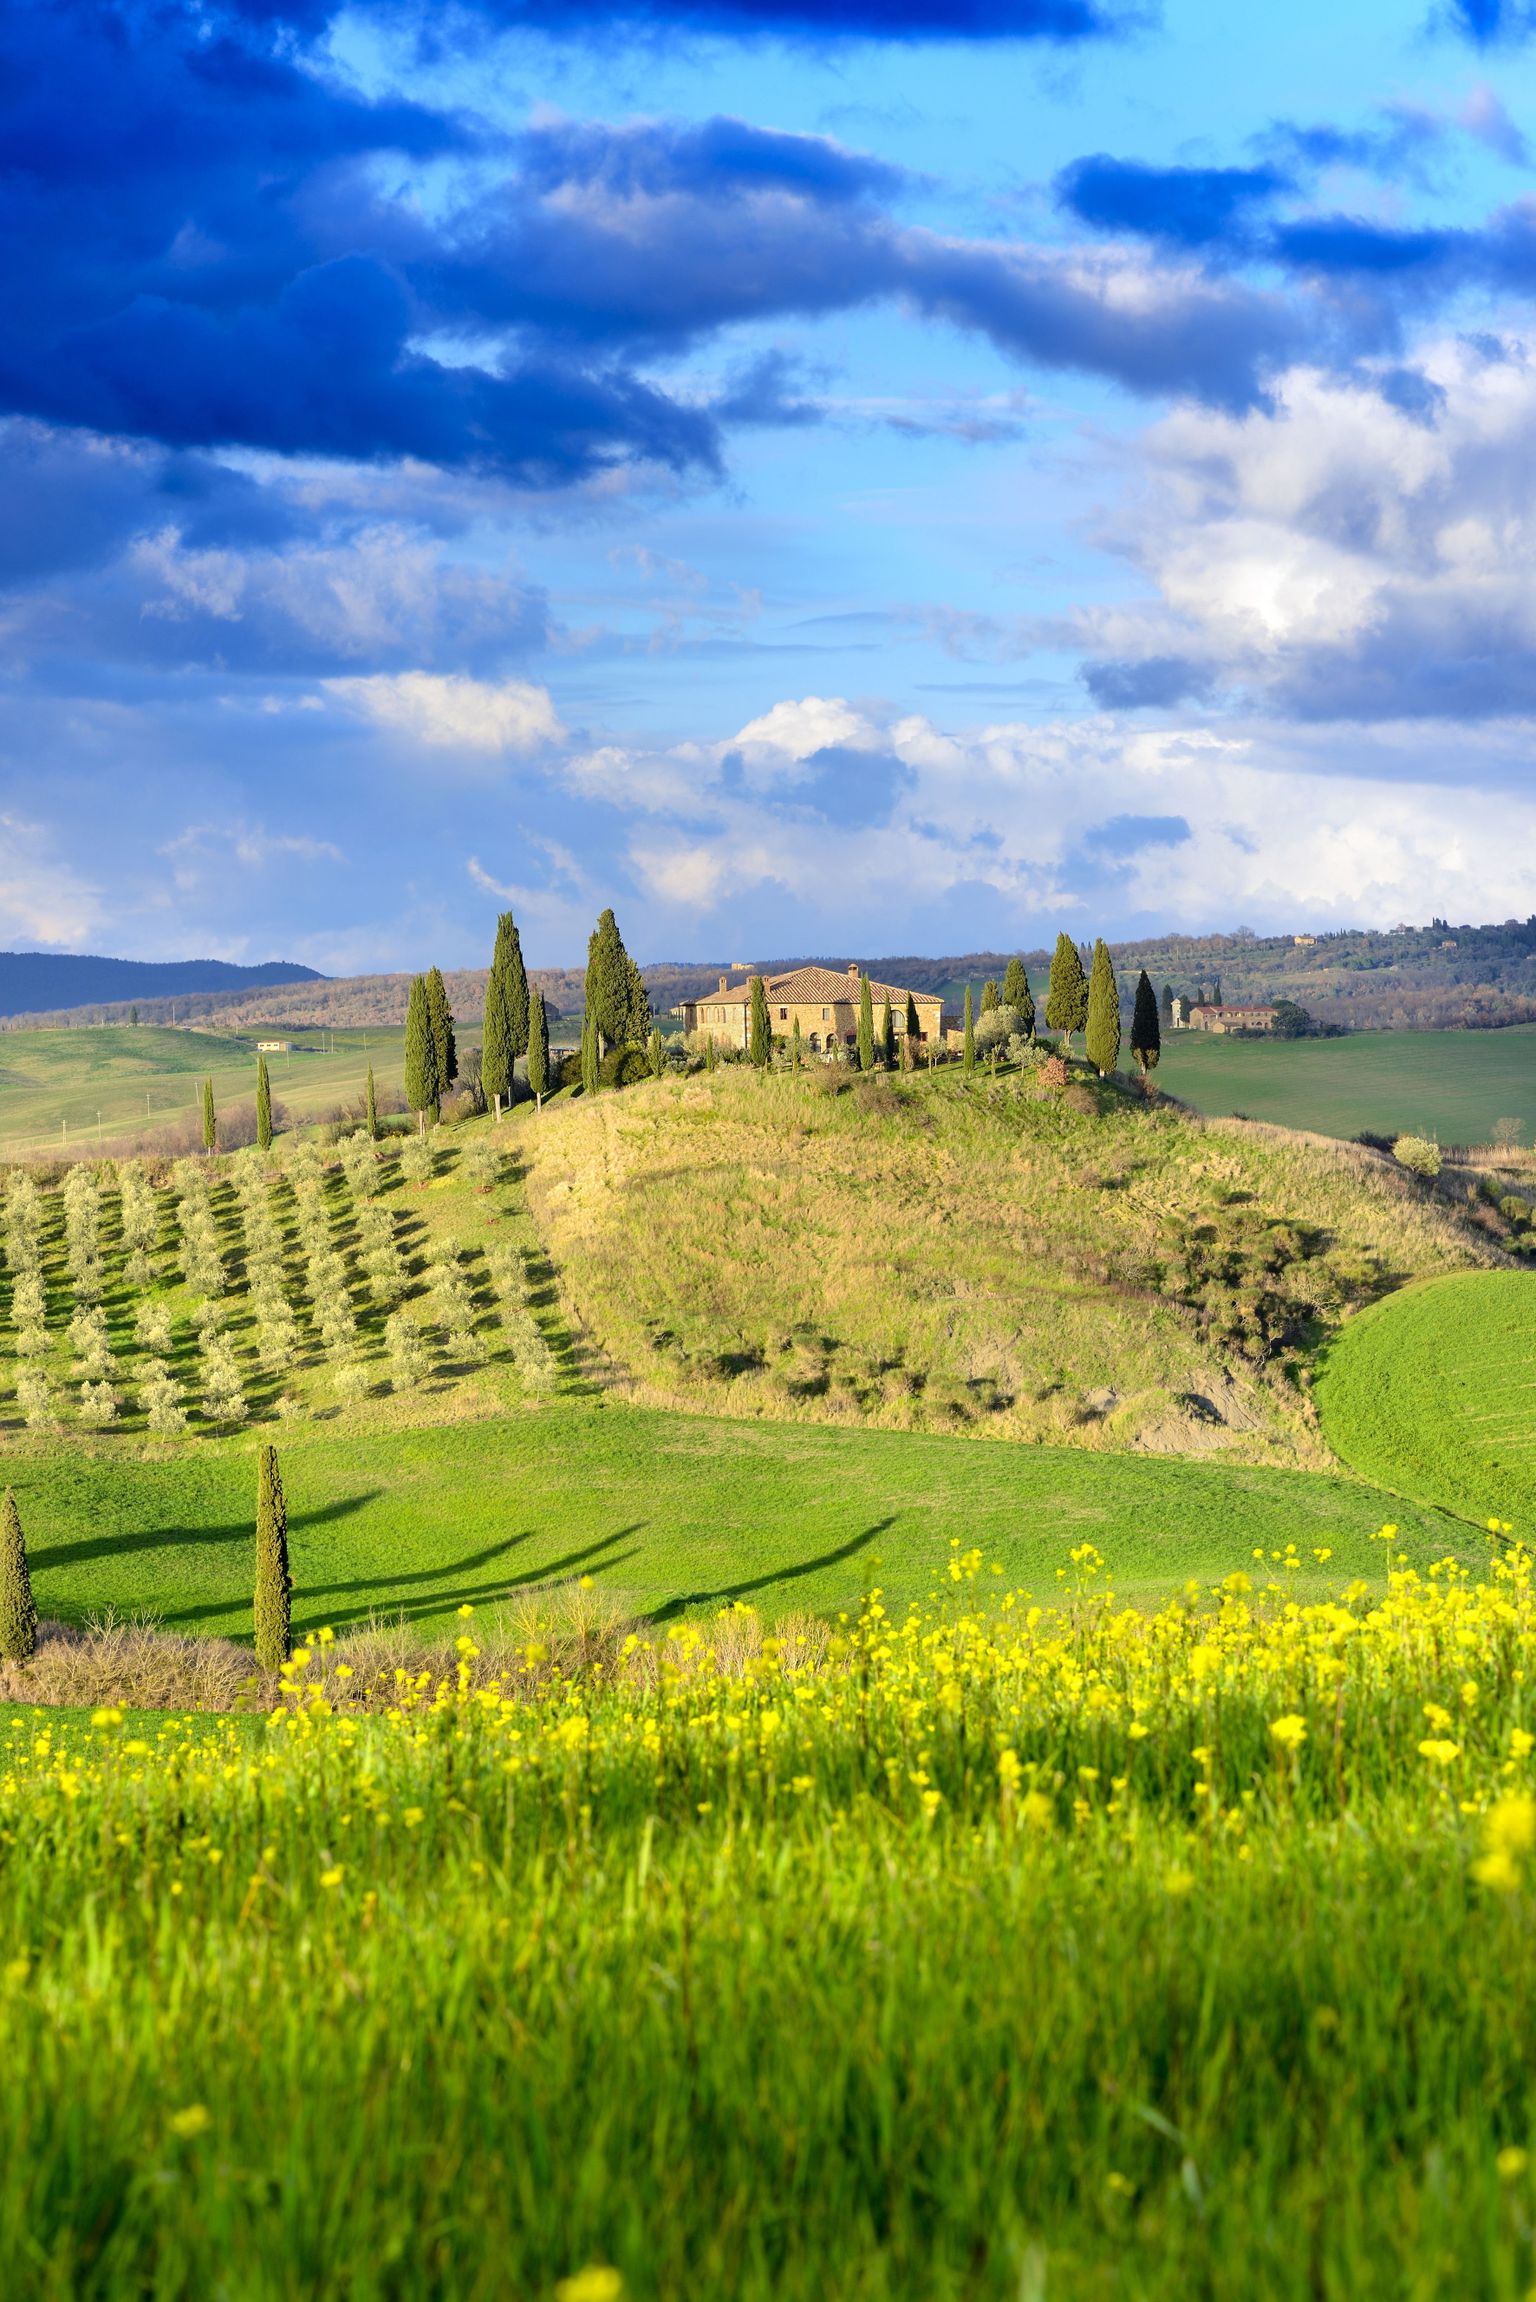 Toscana maalilised vaated ja kukkunud kinnisvarahinnad panevad inimesi kaaluma seda teise kodu ostmiseks.